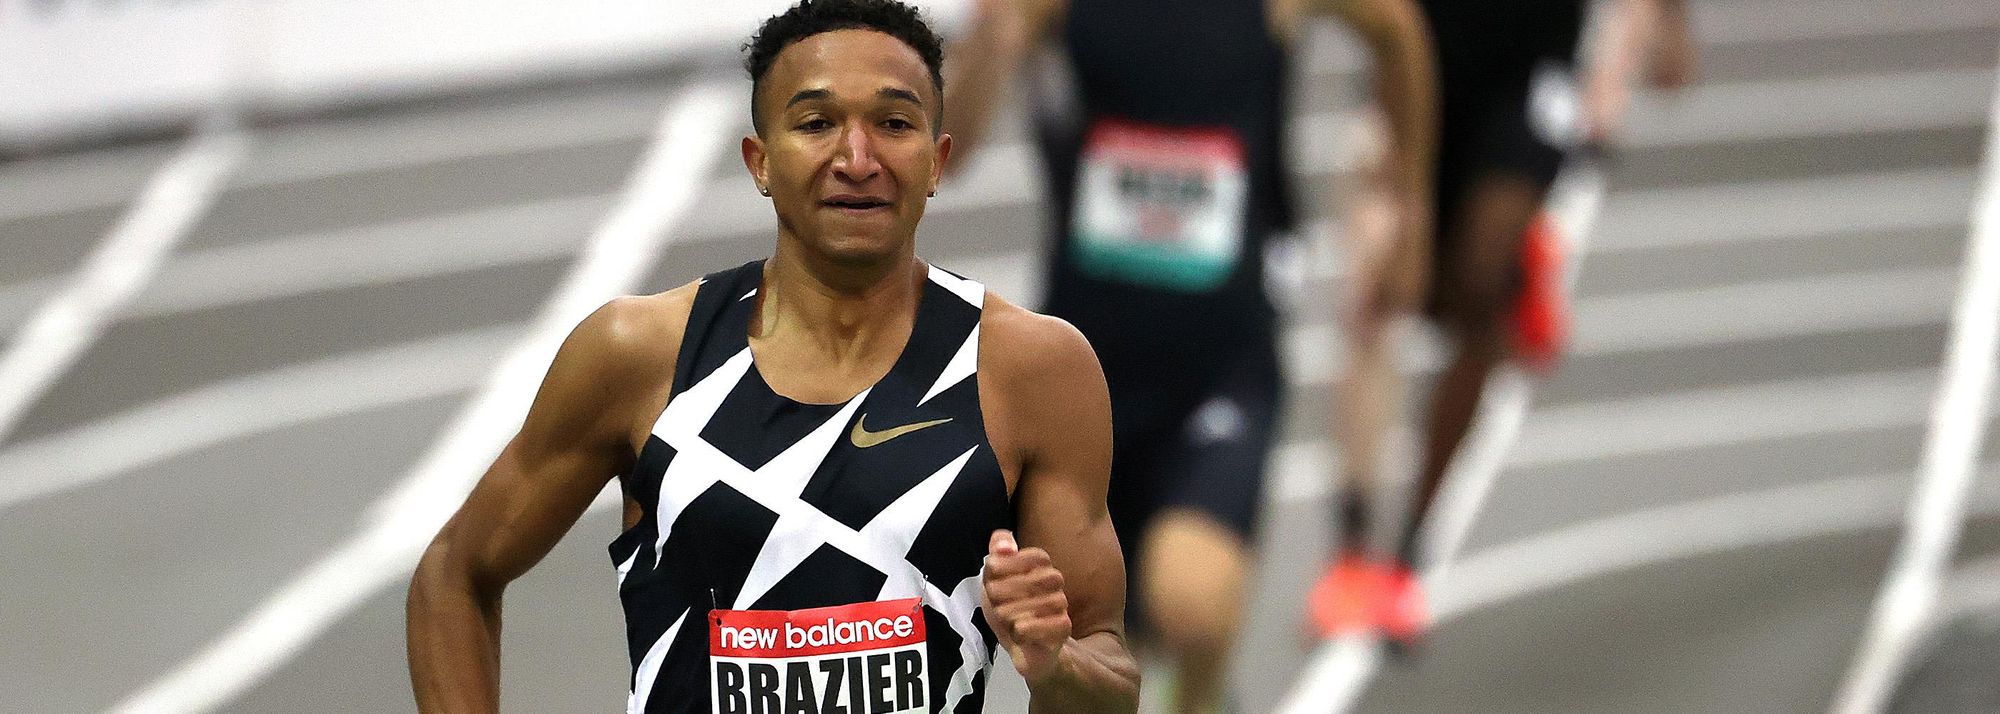 World 800m champion Brazier steps down in distance